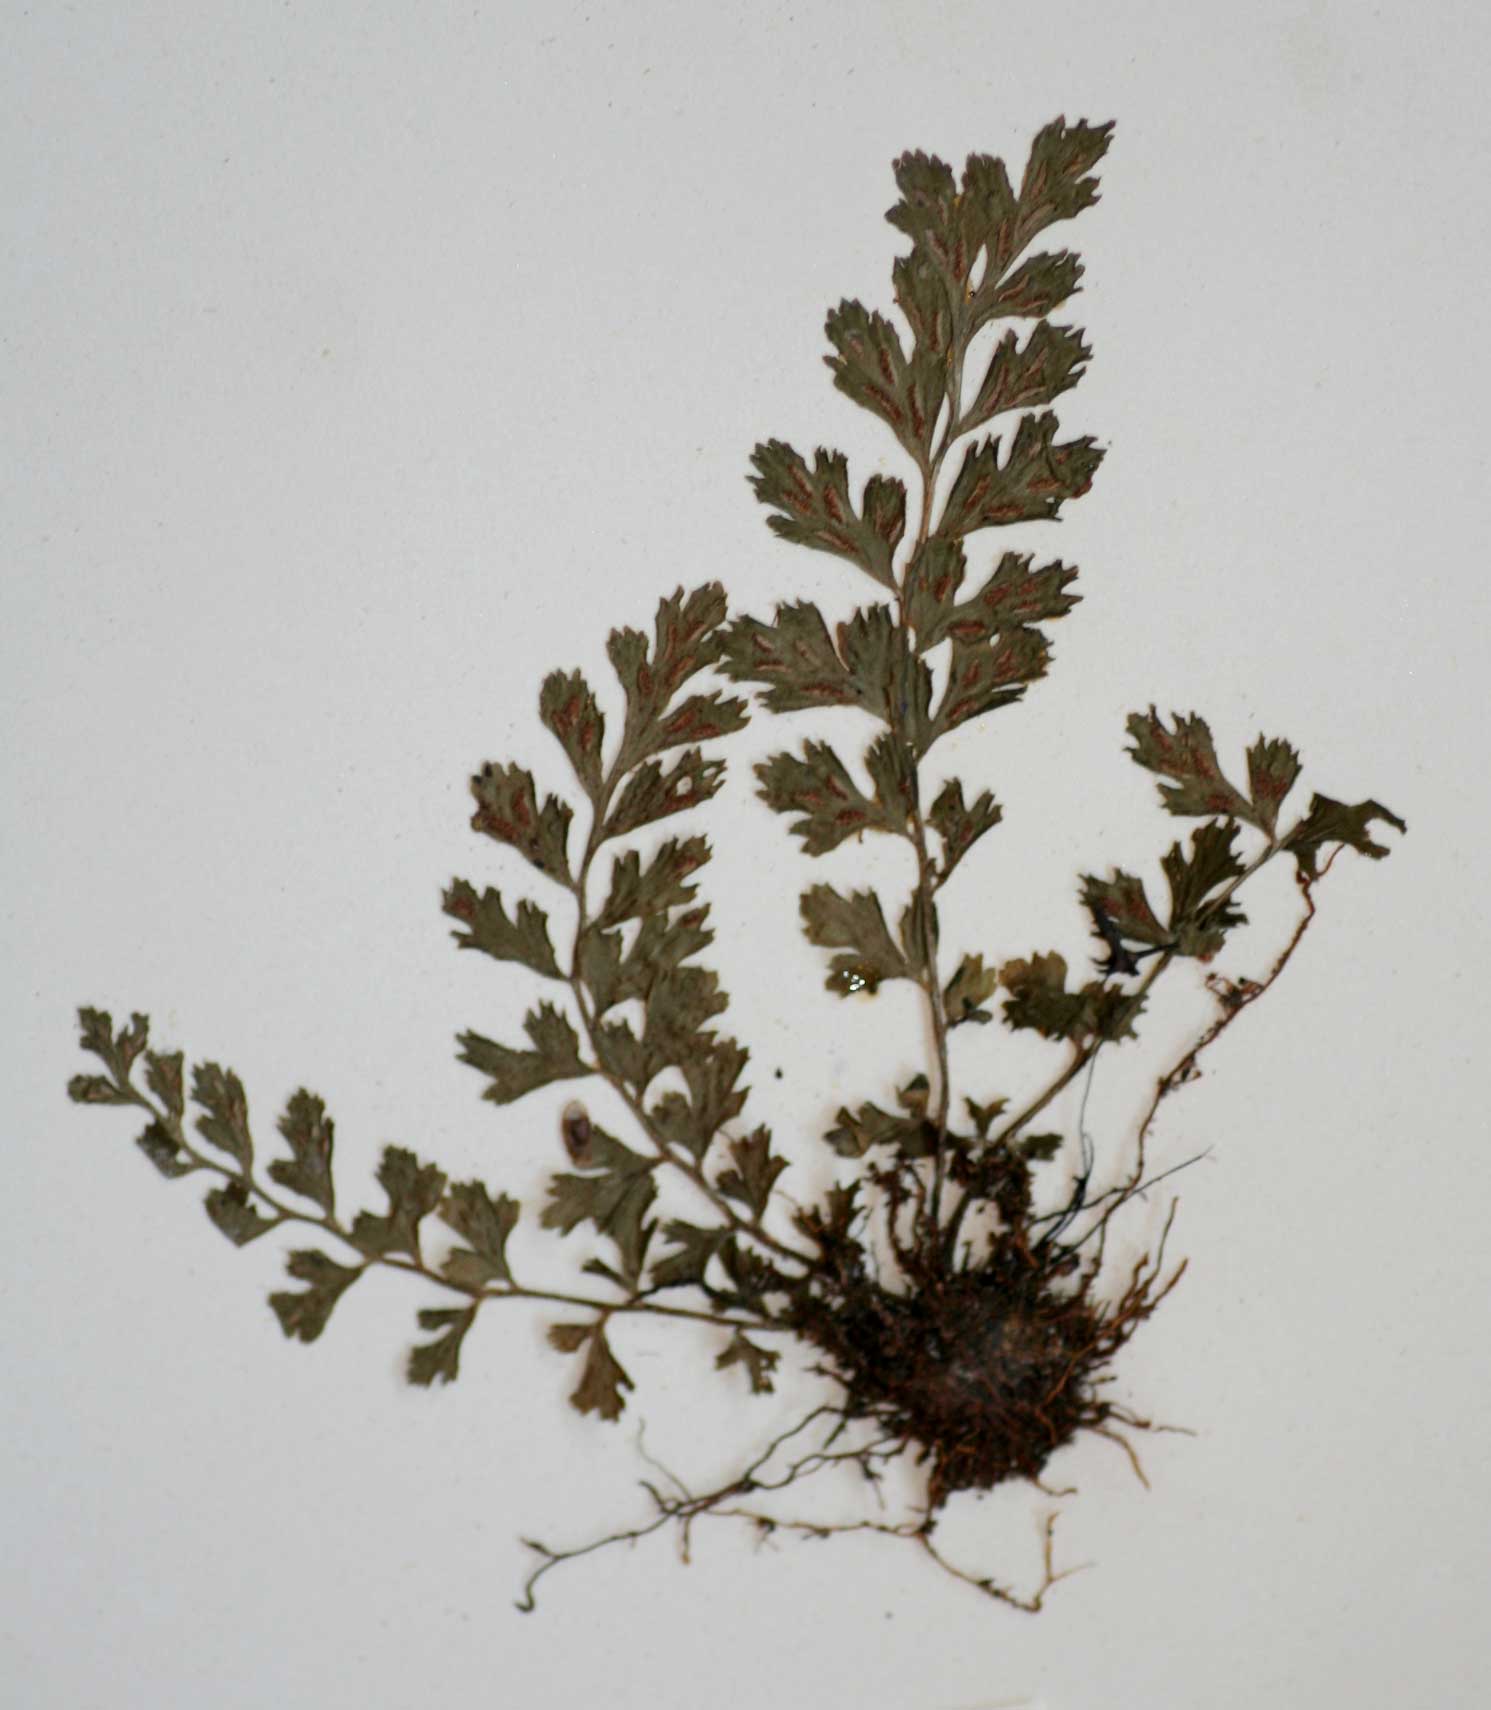 Asplenium varians subsp. fimbriatum